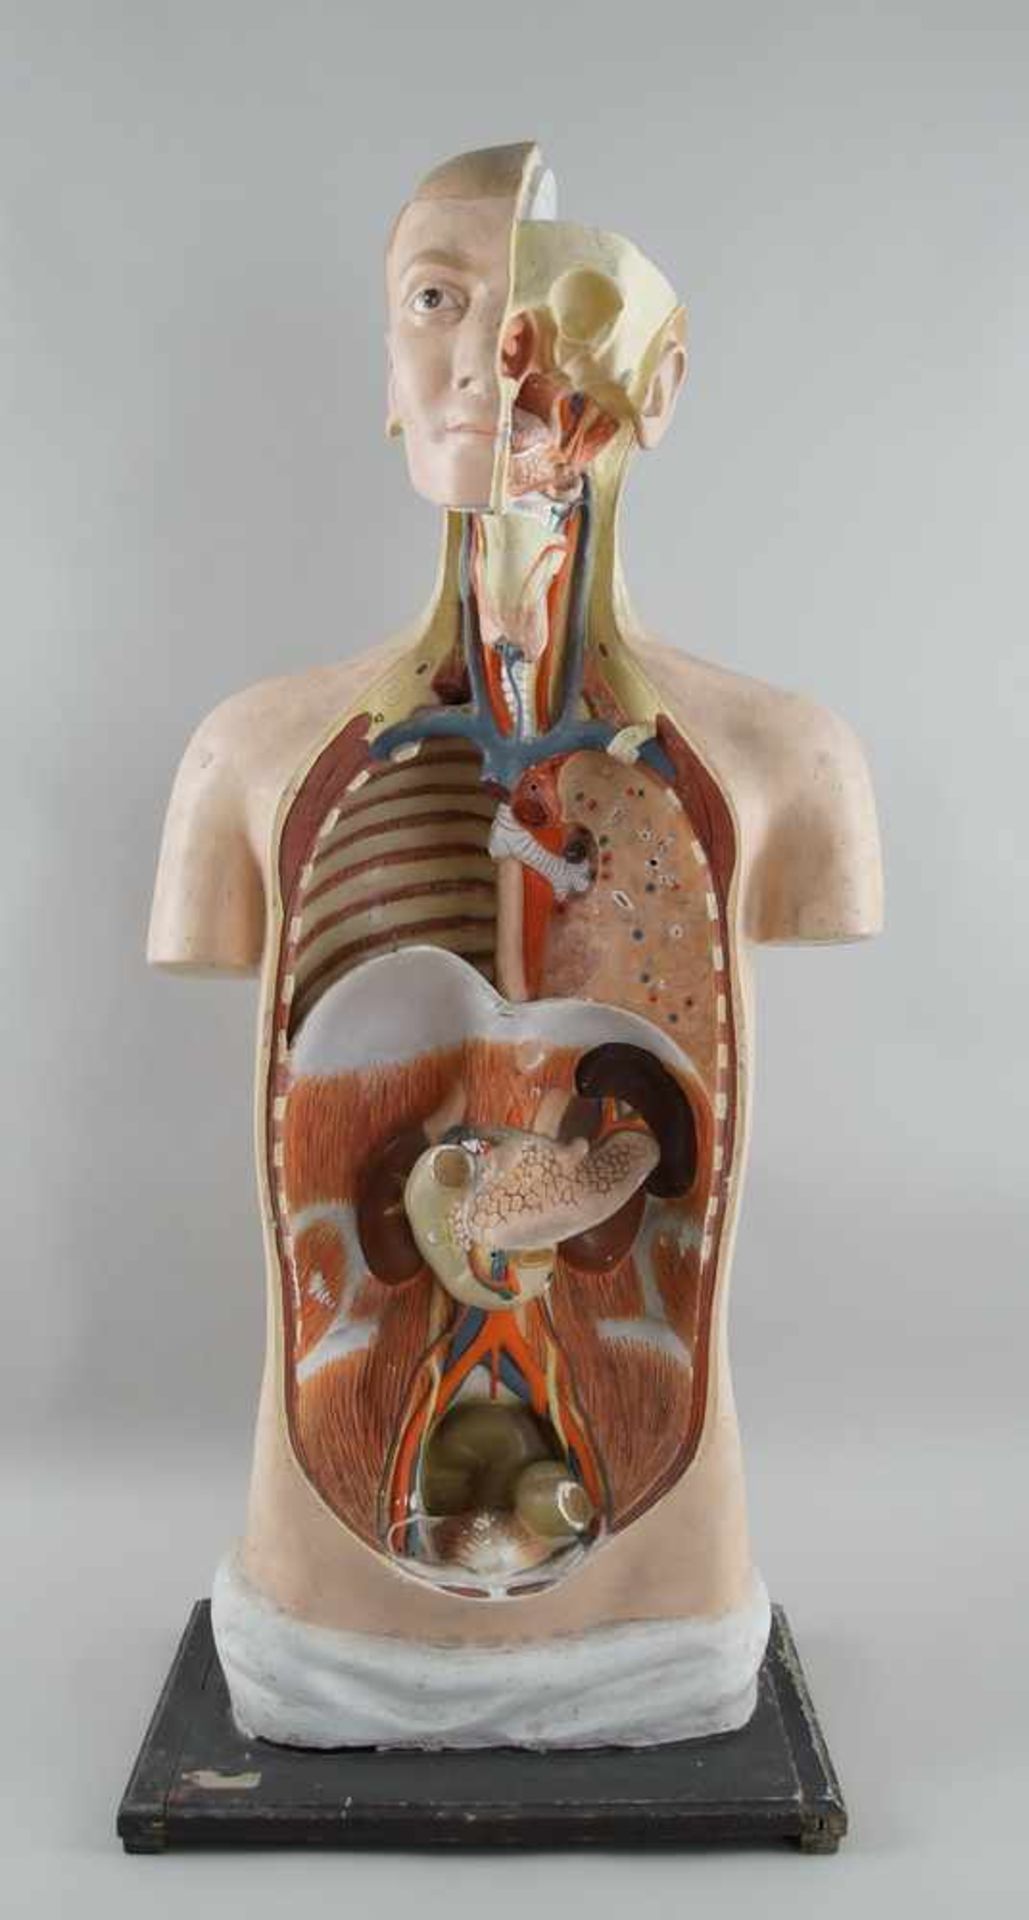 Anatomisches Modell eines menschlichen Oberkörpers mit verschiedenen Organen,Altersspuren/ - Bild 2 aus 7